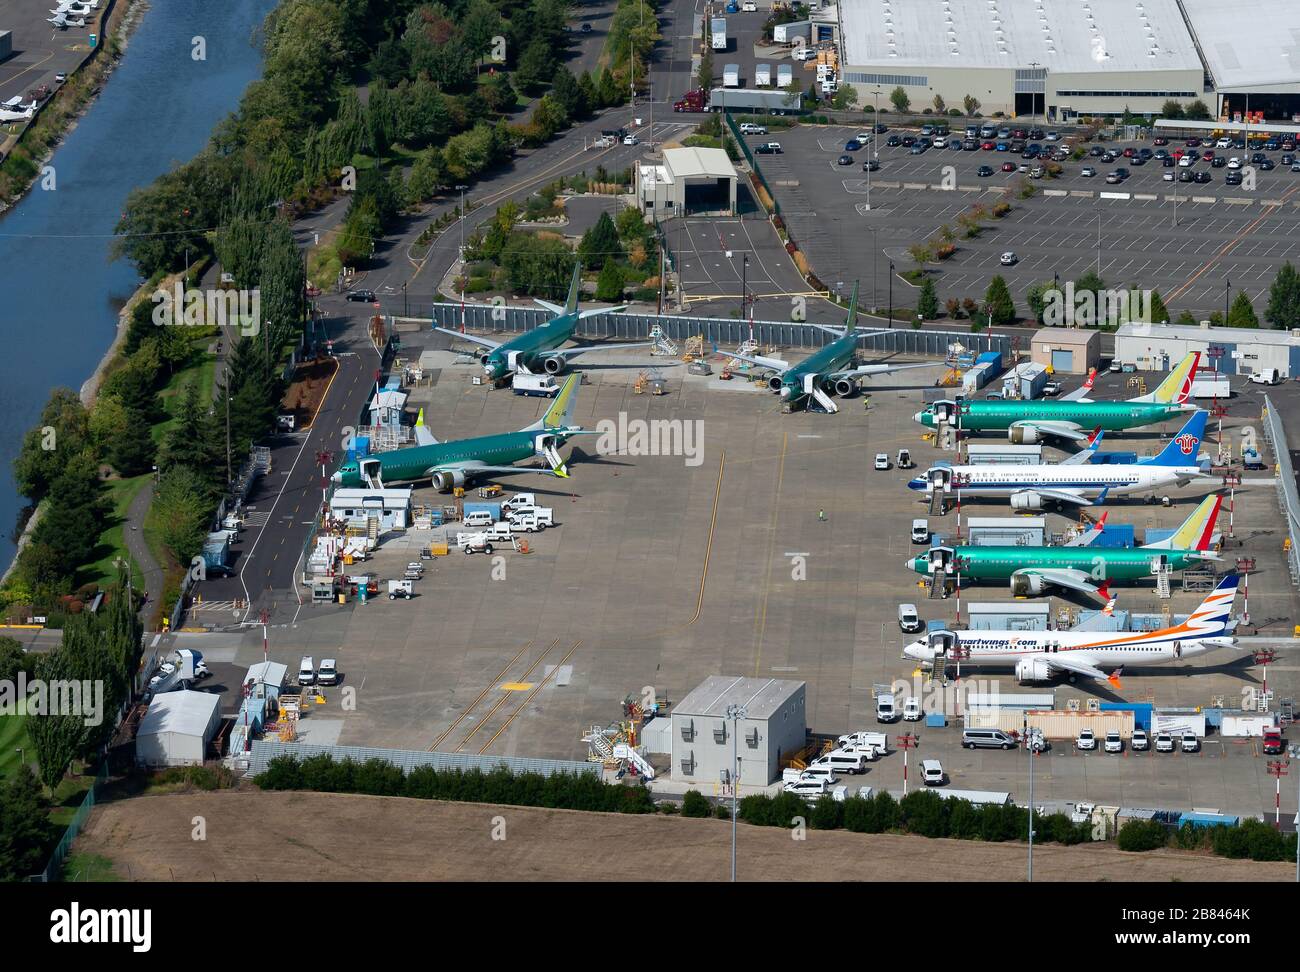 Plusieurs Boeing 737 (NG et MAX) stationnés à l'aéroport de Renton en attendant les essais de vol, la peinture et la livraison. Usine Boeing, à WA, États-Unis. Banque D'Images